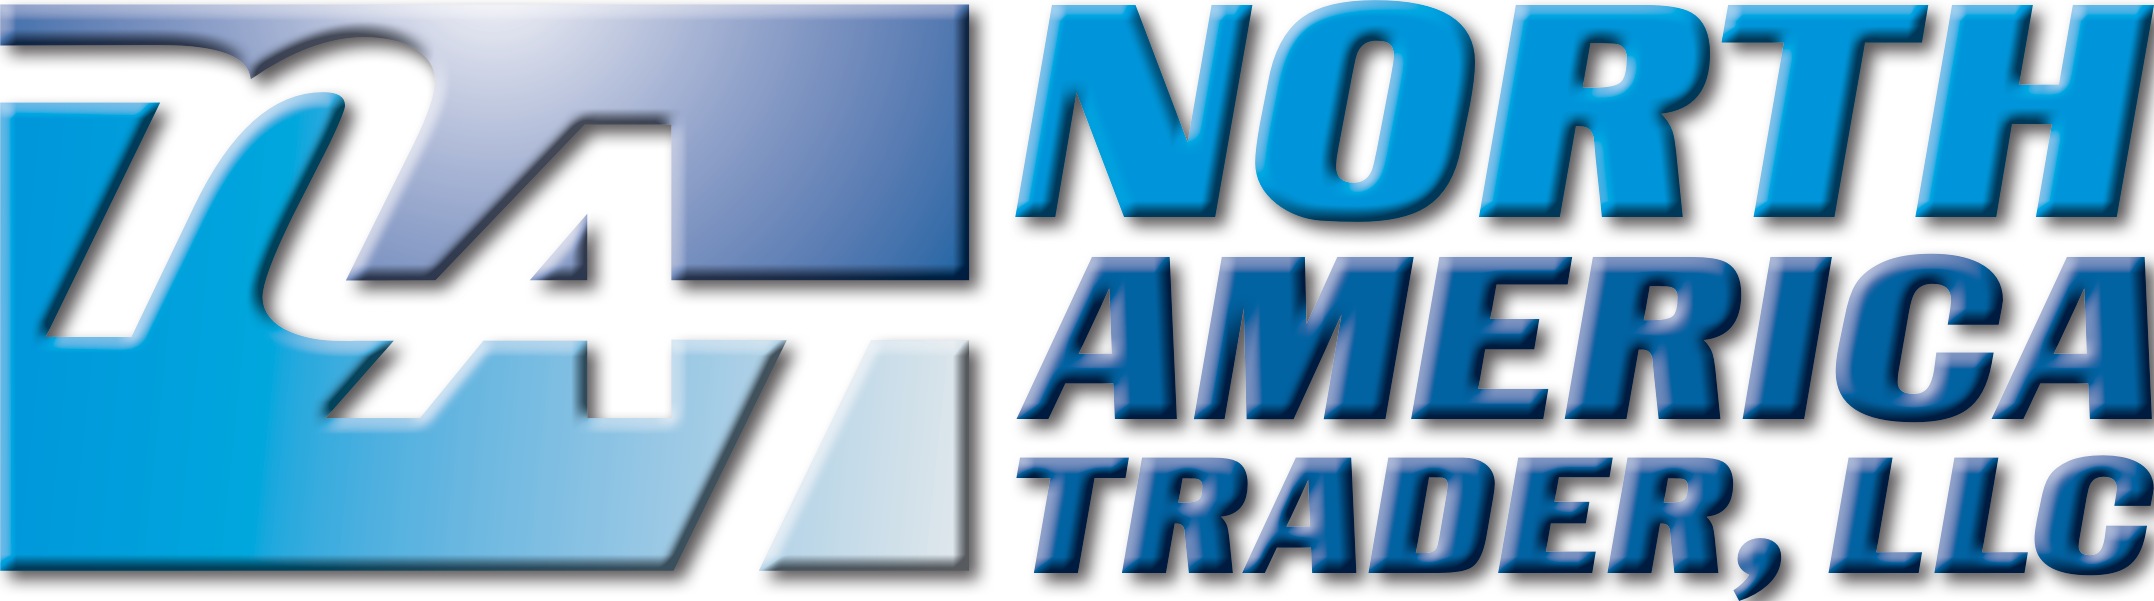 NAT Logo2 wit Bevel and Shadow Transparent Bkgrnd2.png